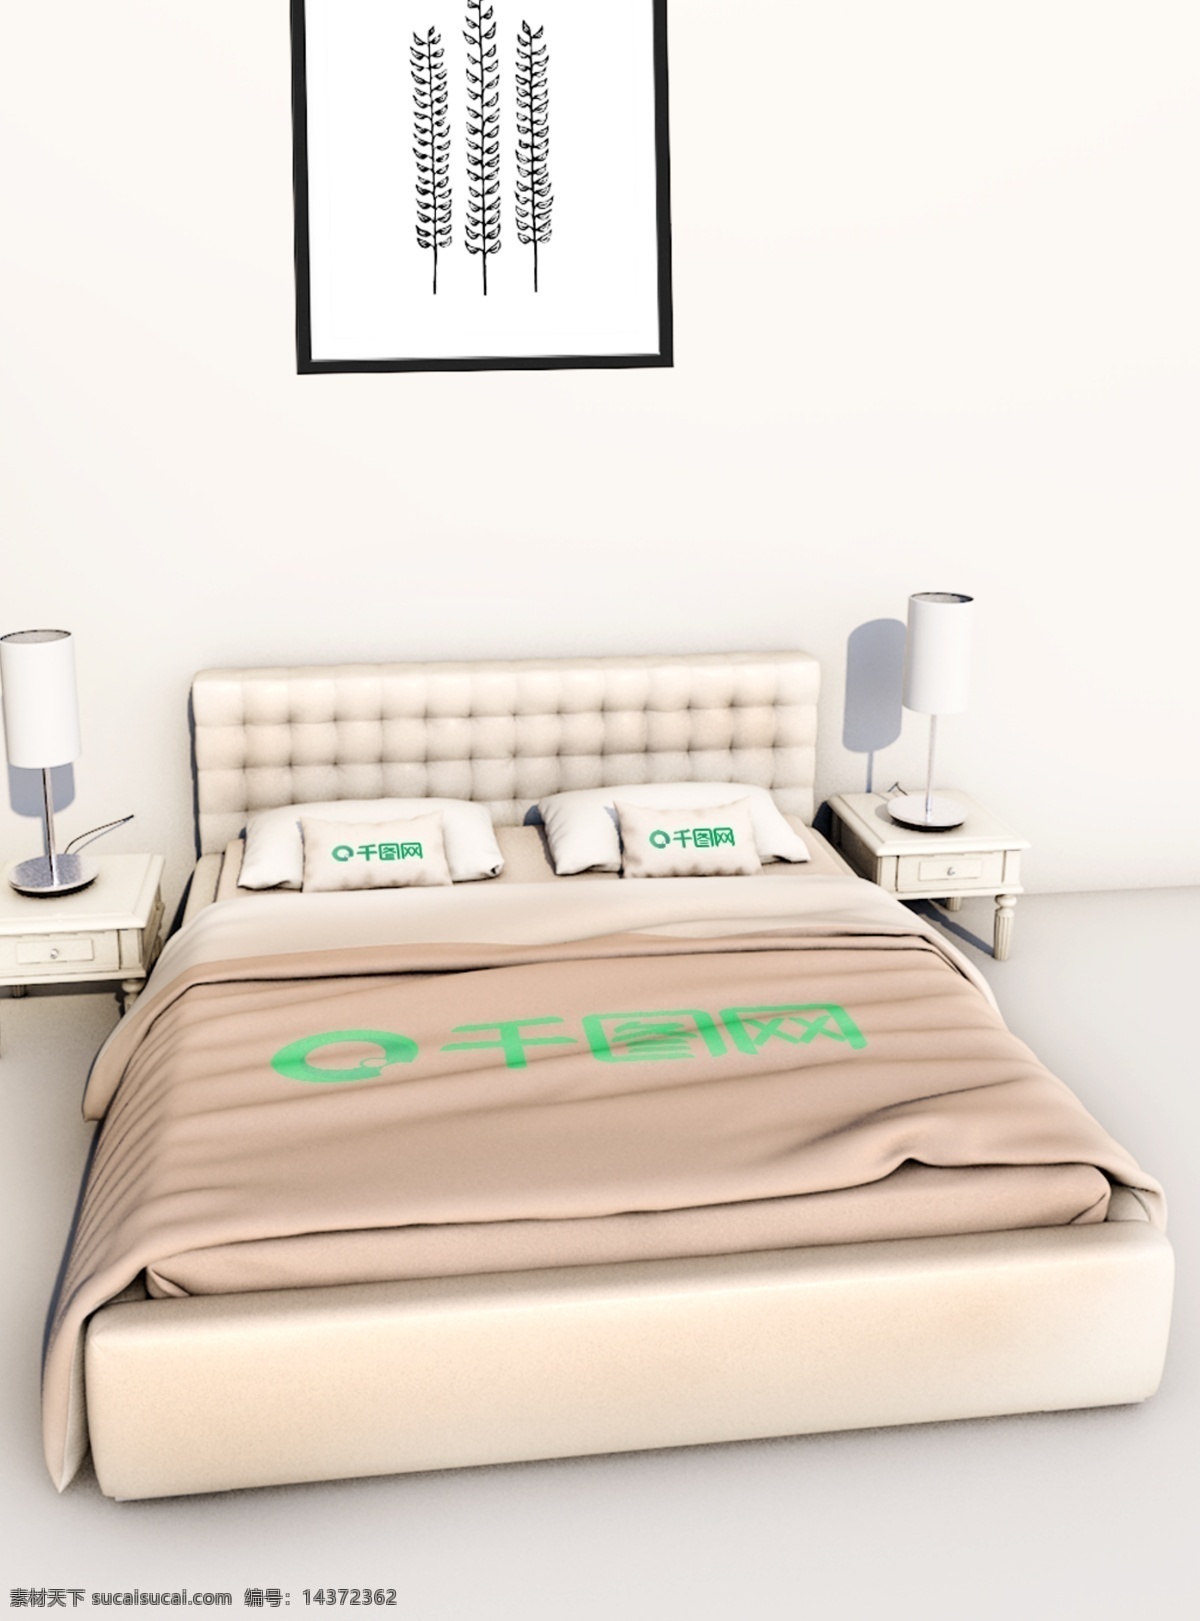 原创 c4d 整套 床上用品 被子 头枕 枕头 样机 被子样机 靠枕样机 床上用品样机 卧室床 其他样机